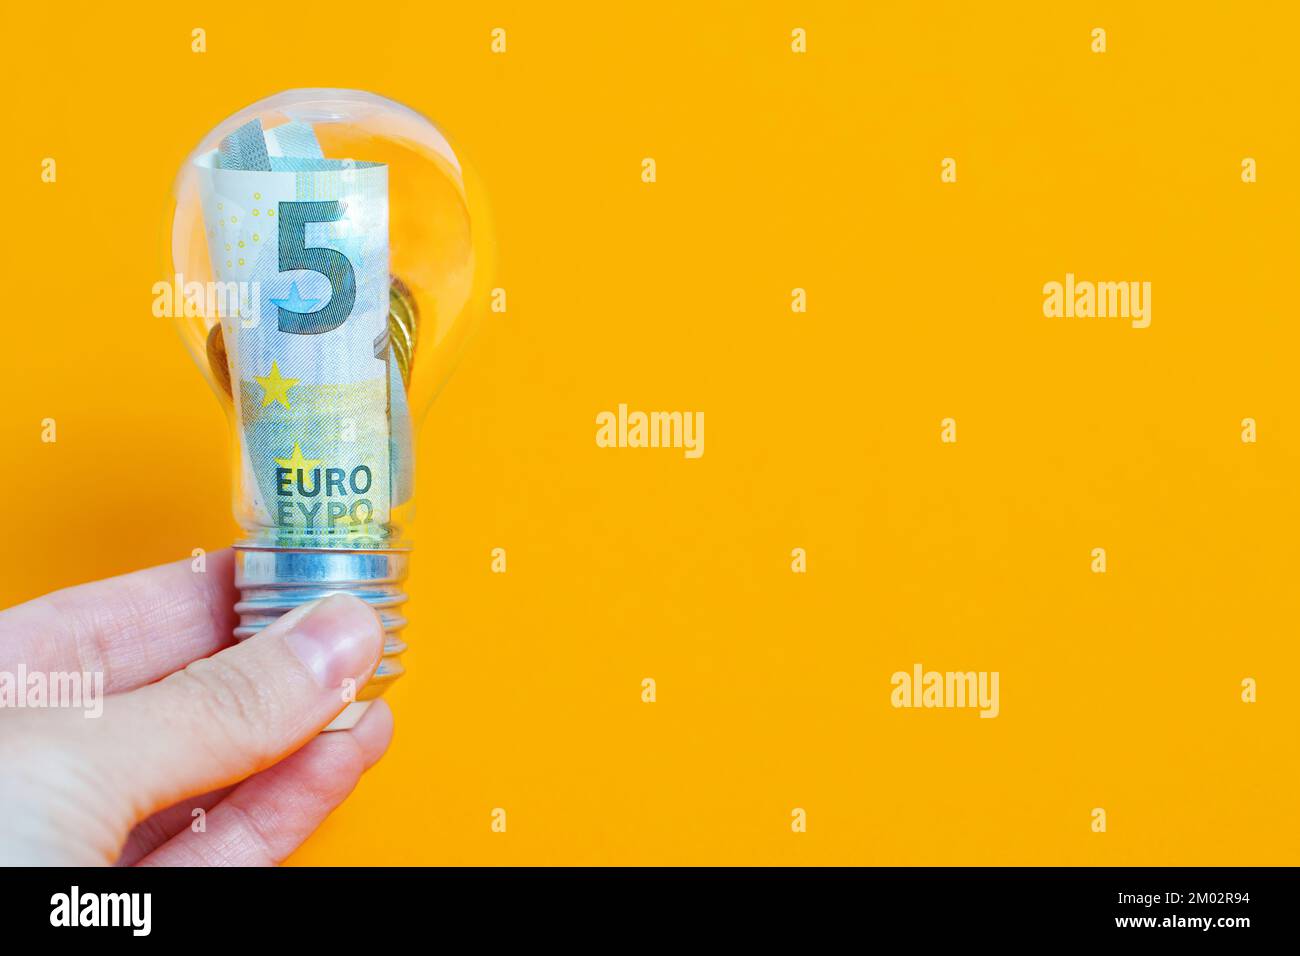 Billet de banque et pièces de monnaie en euros placés à l'intérieur d'une ampoule isolée sur fond jaune. Concept d'idée commerciale rentable. Banque D'Images